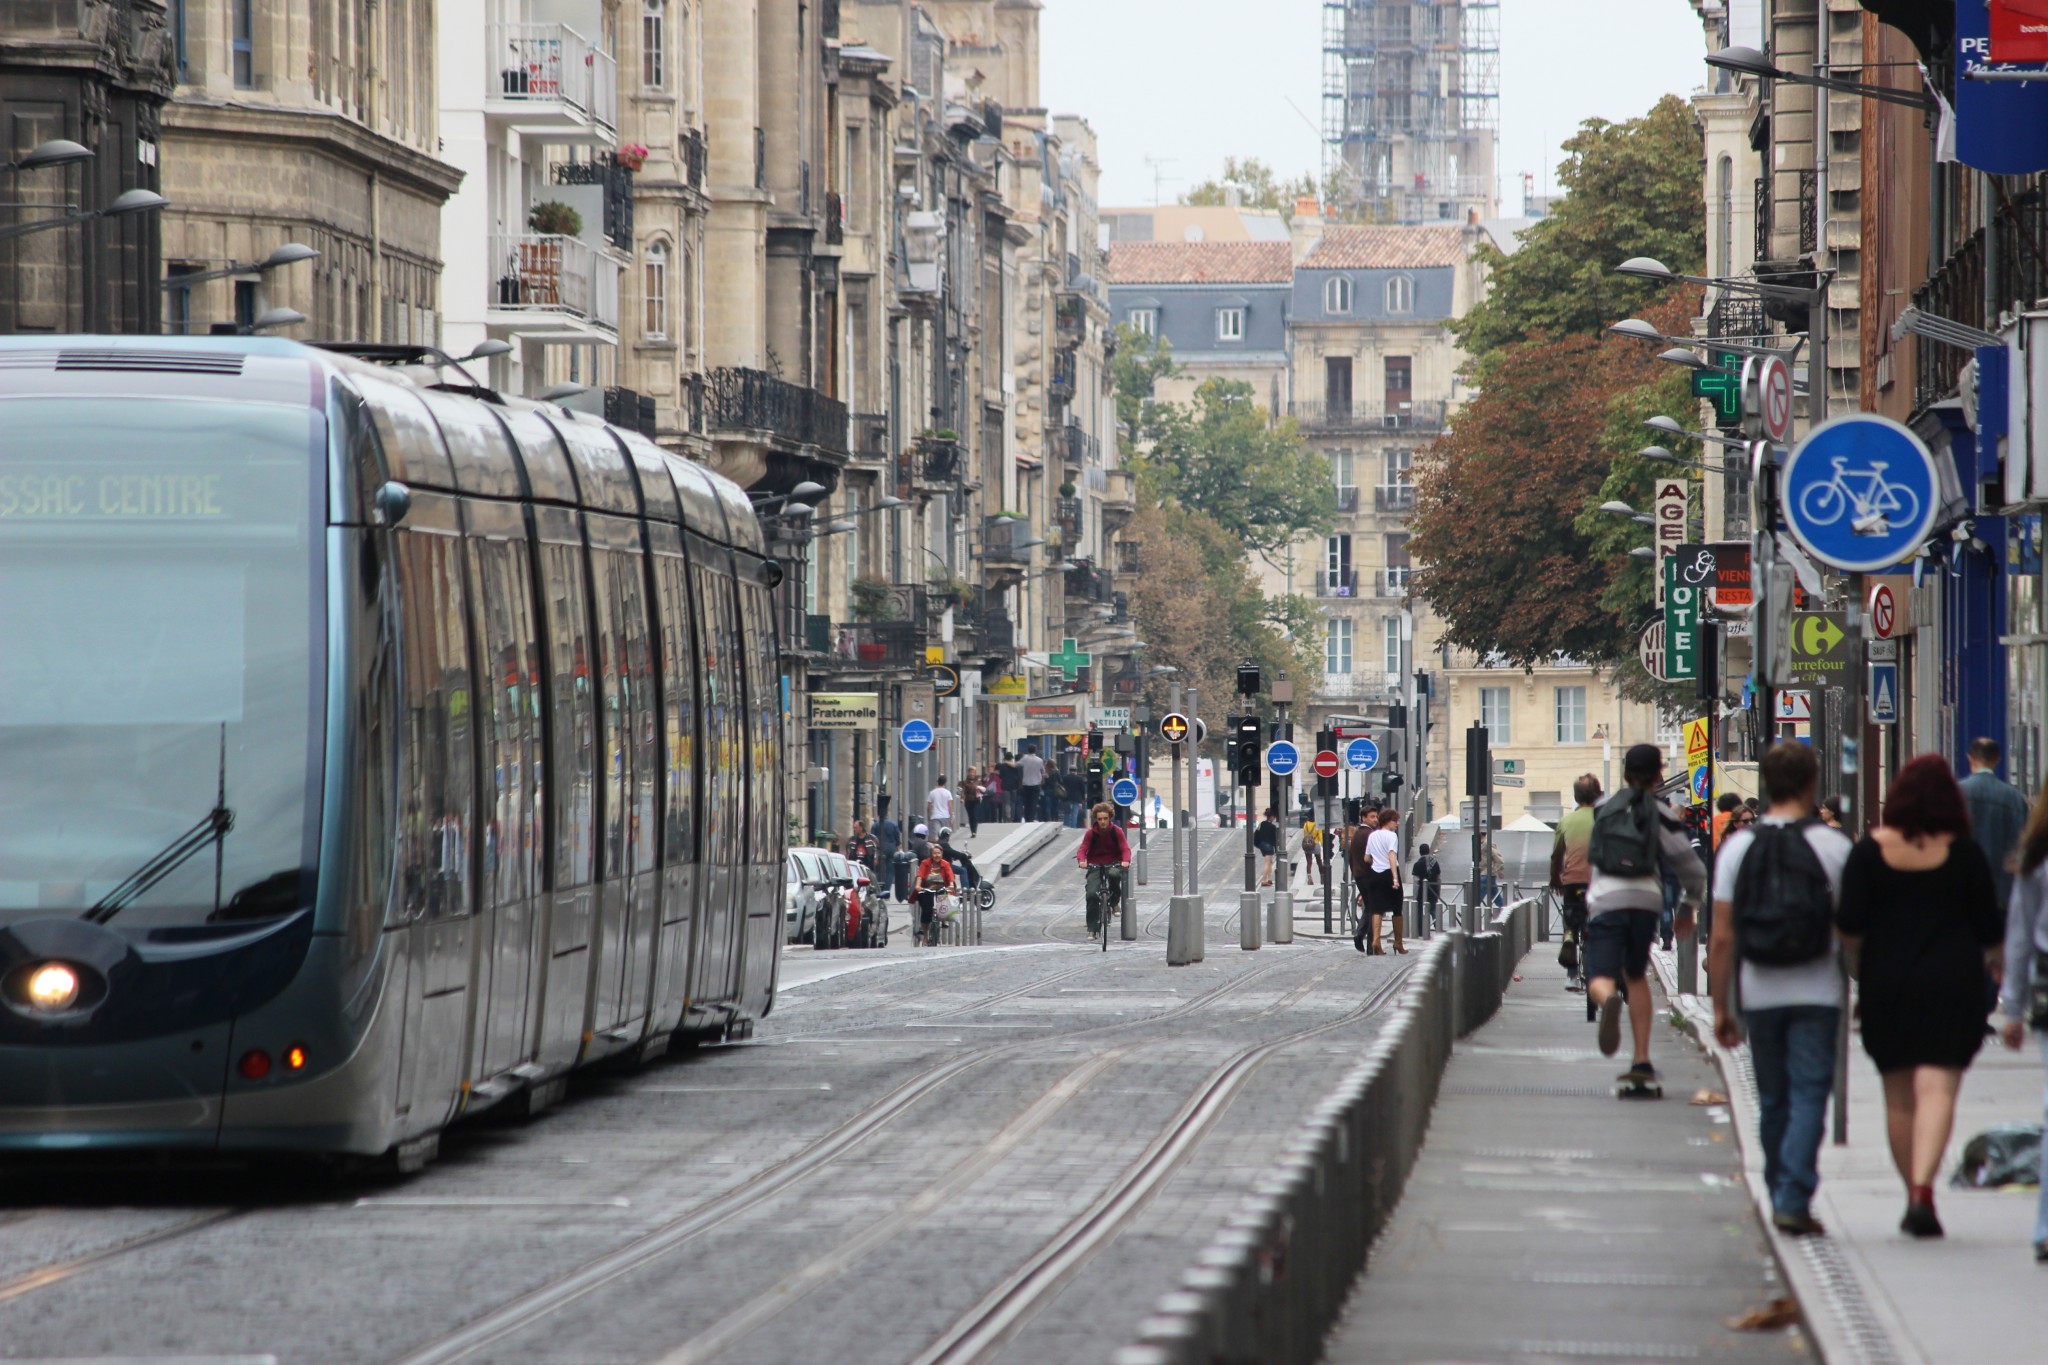 A tram in Bordeaux